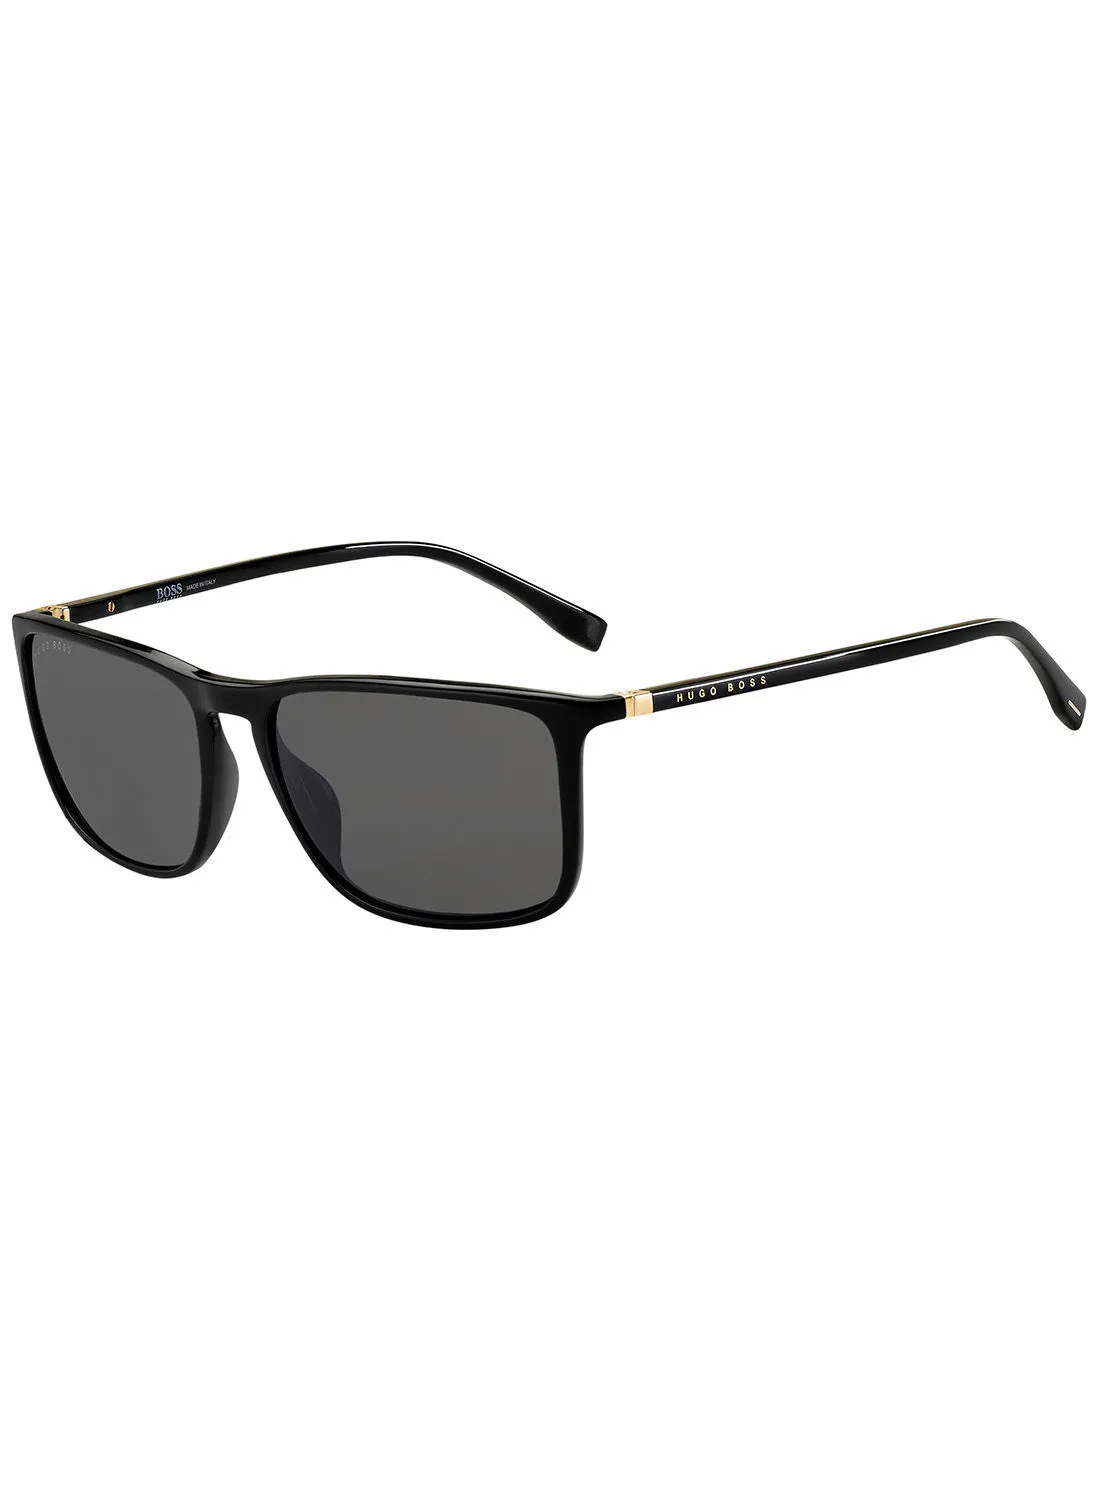 HUGO BOSS Men Rectangular Sunglasses BOSS 0665/S/IT  BLK GOLD 57